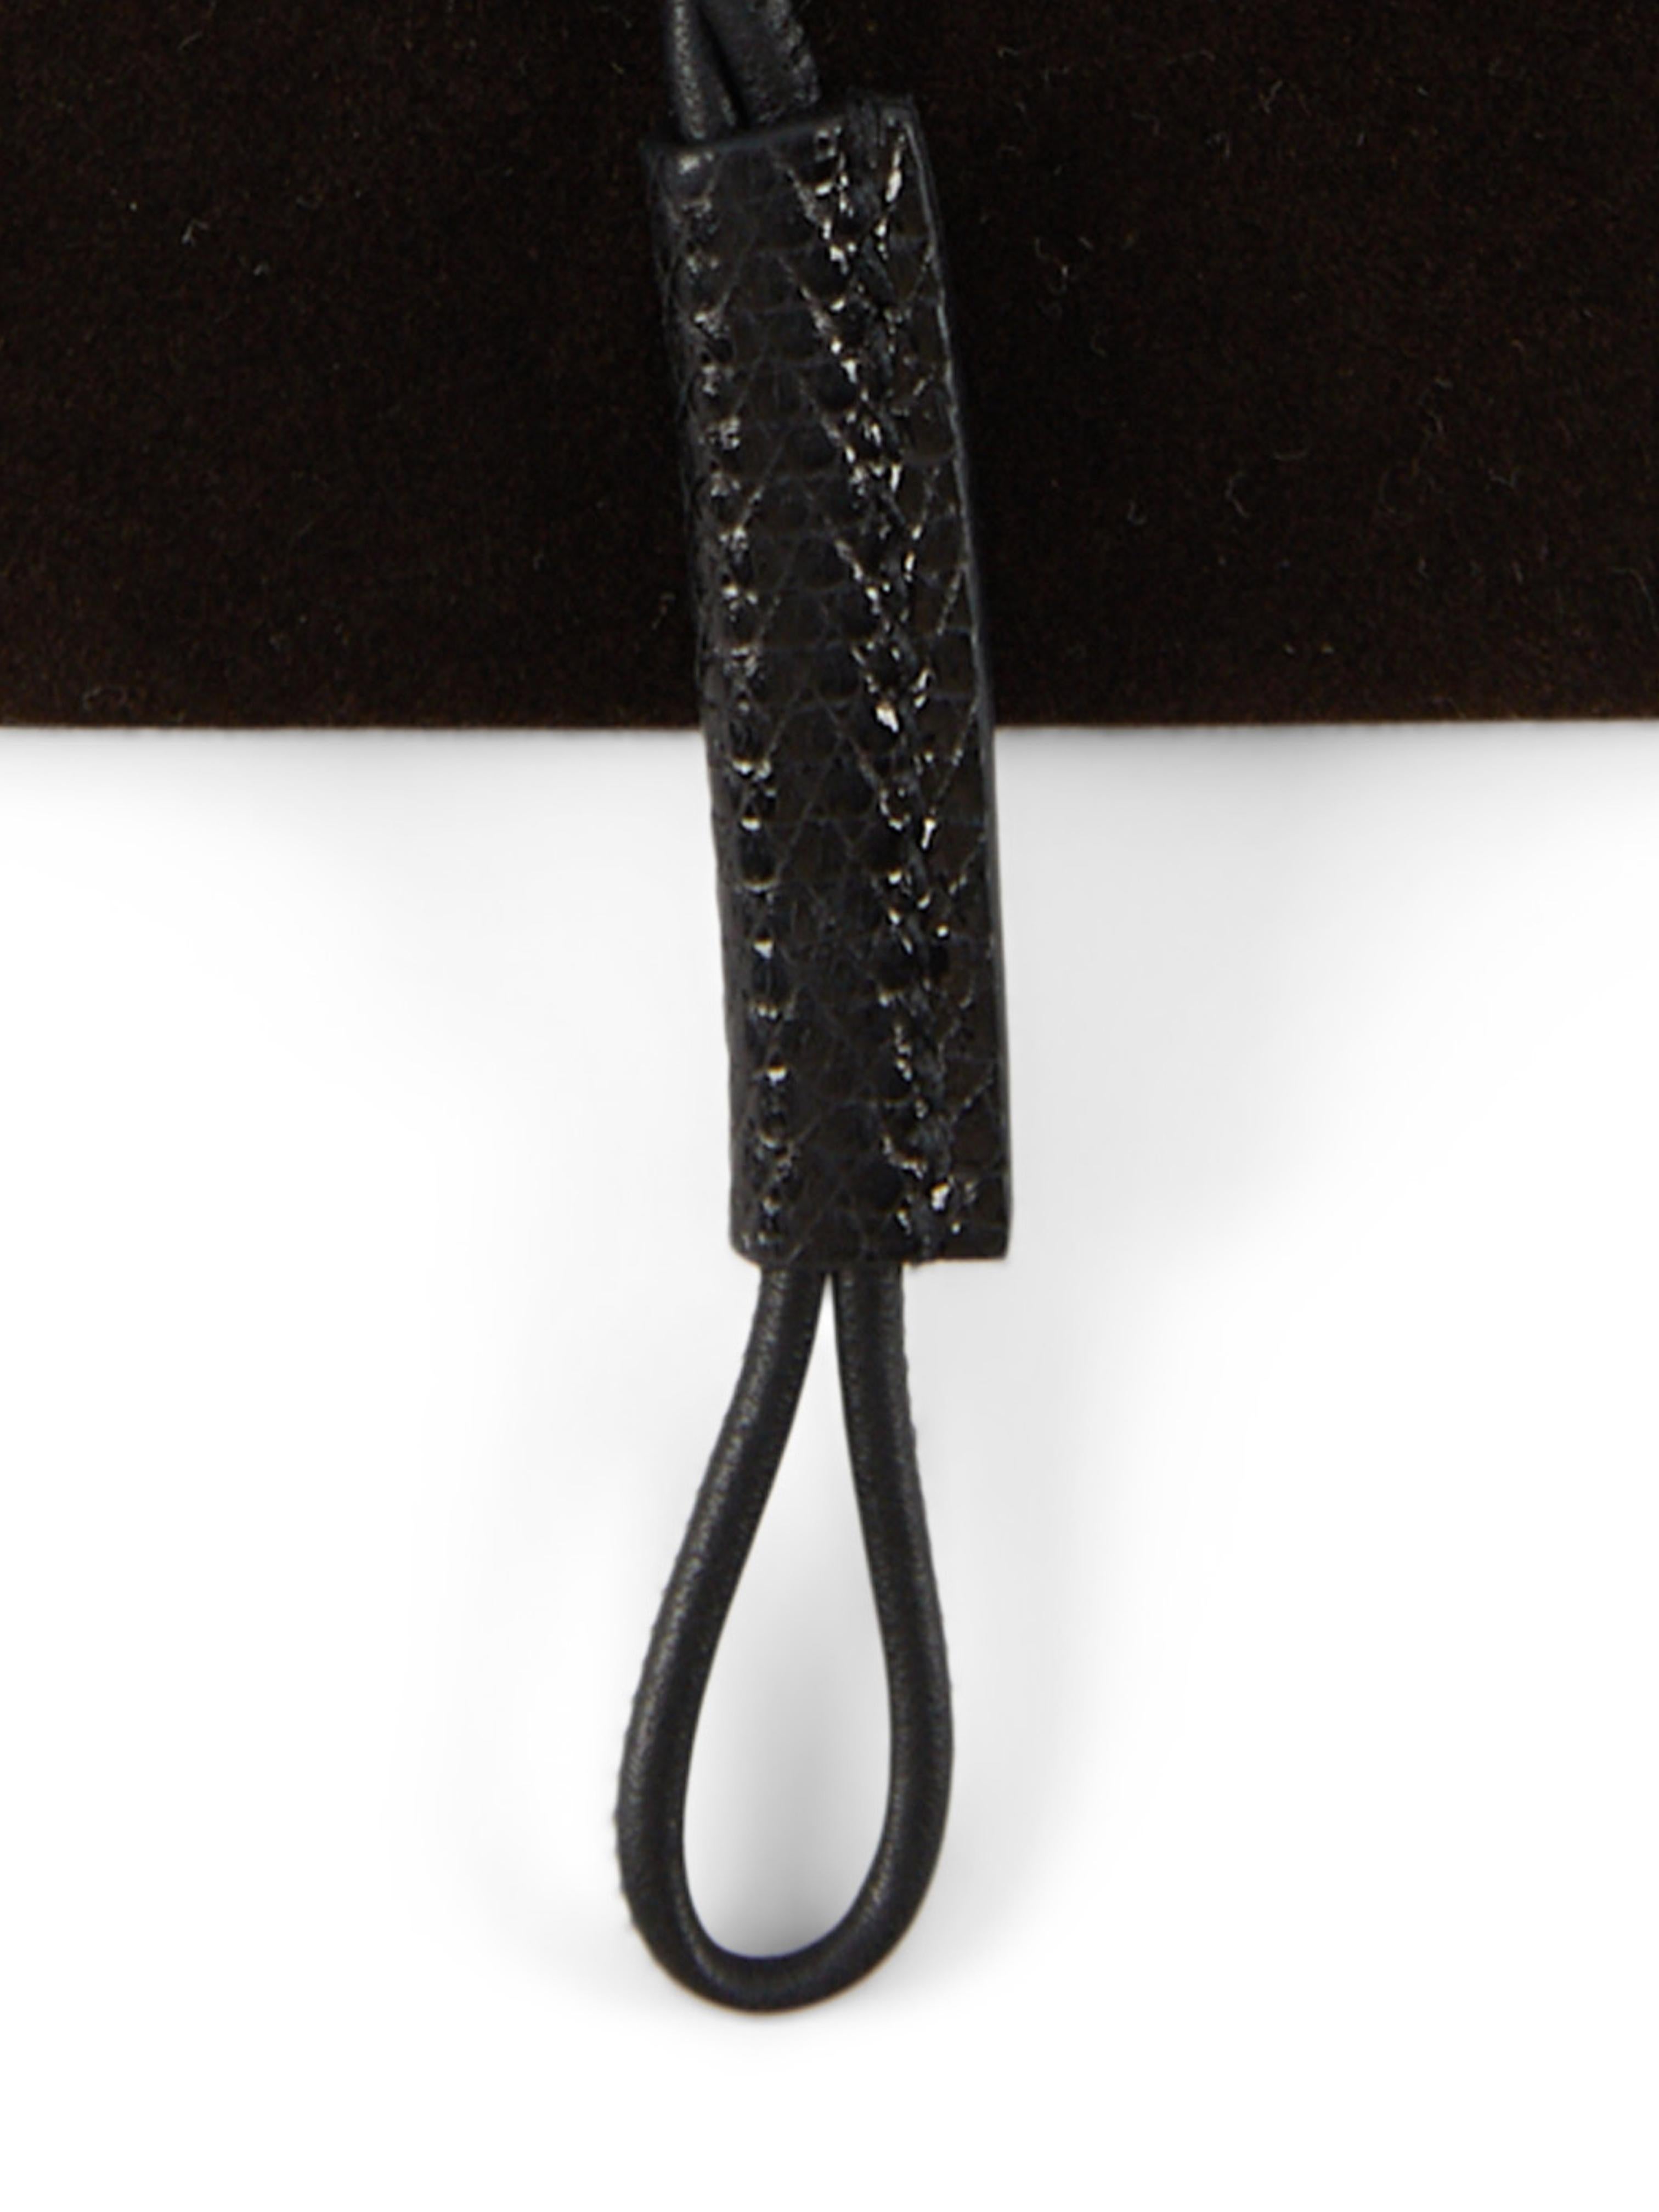 Collier de Curiosités Hermès en noir

Cuir de lézard

Longueur de la chaîne : 40,5 cm 

Accompagné de : Boîte et ruban Hermès